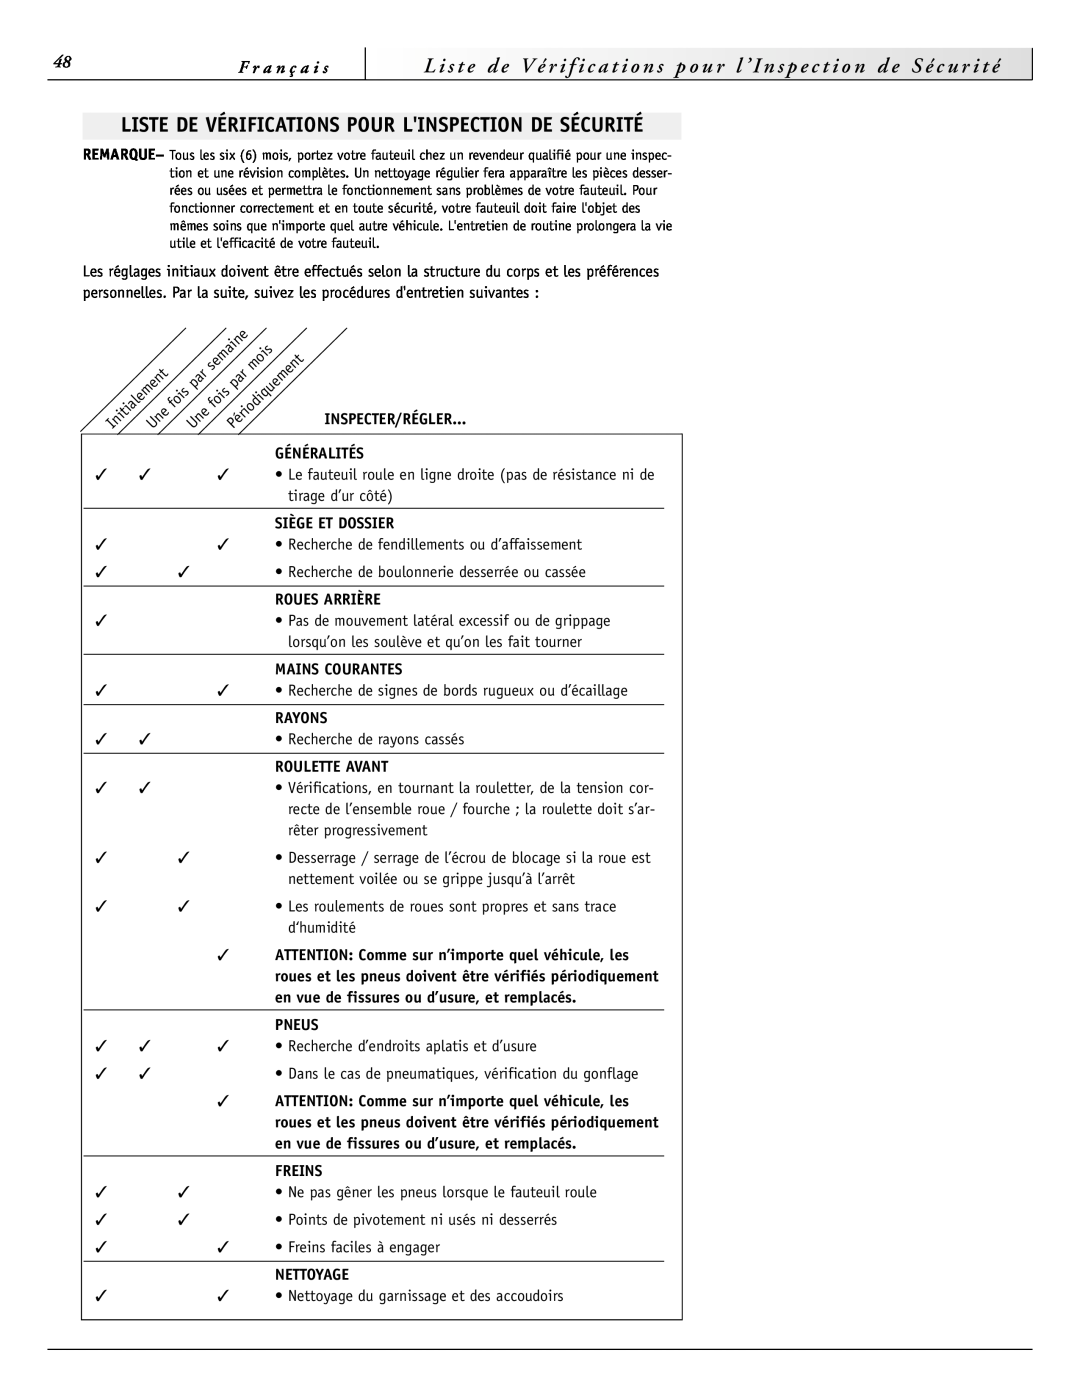 Sunrise Medical 2000HD Series Liste De Vérifications Pour Linspection De Sécurité, Inspecter/Régler, Généralités, Rayons 